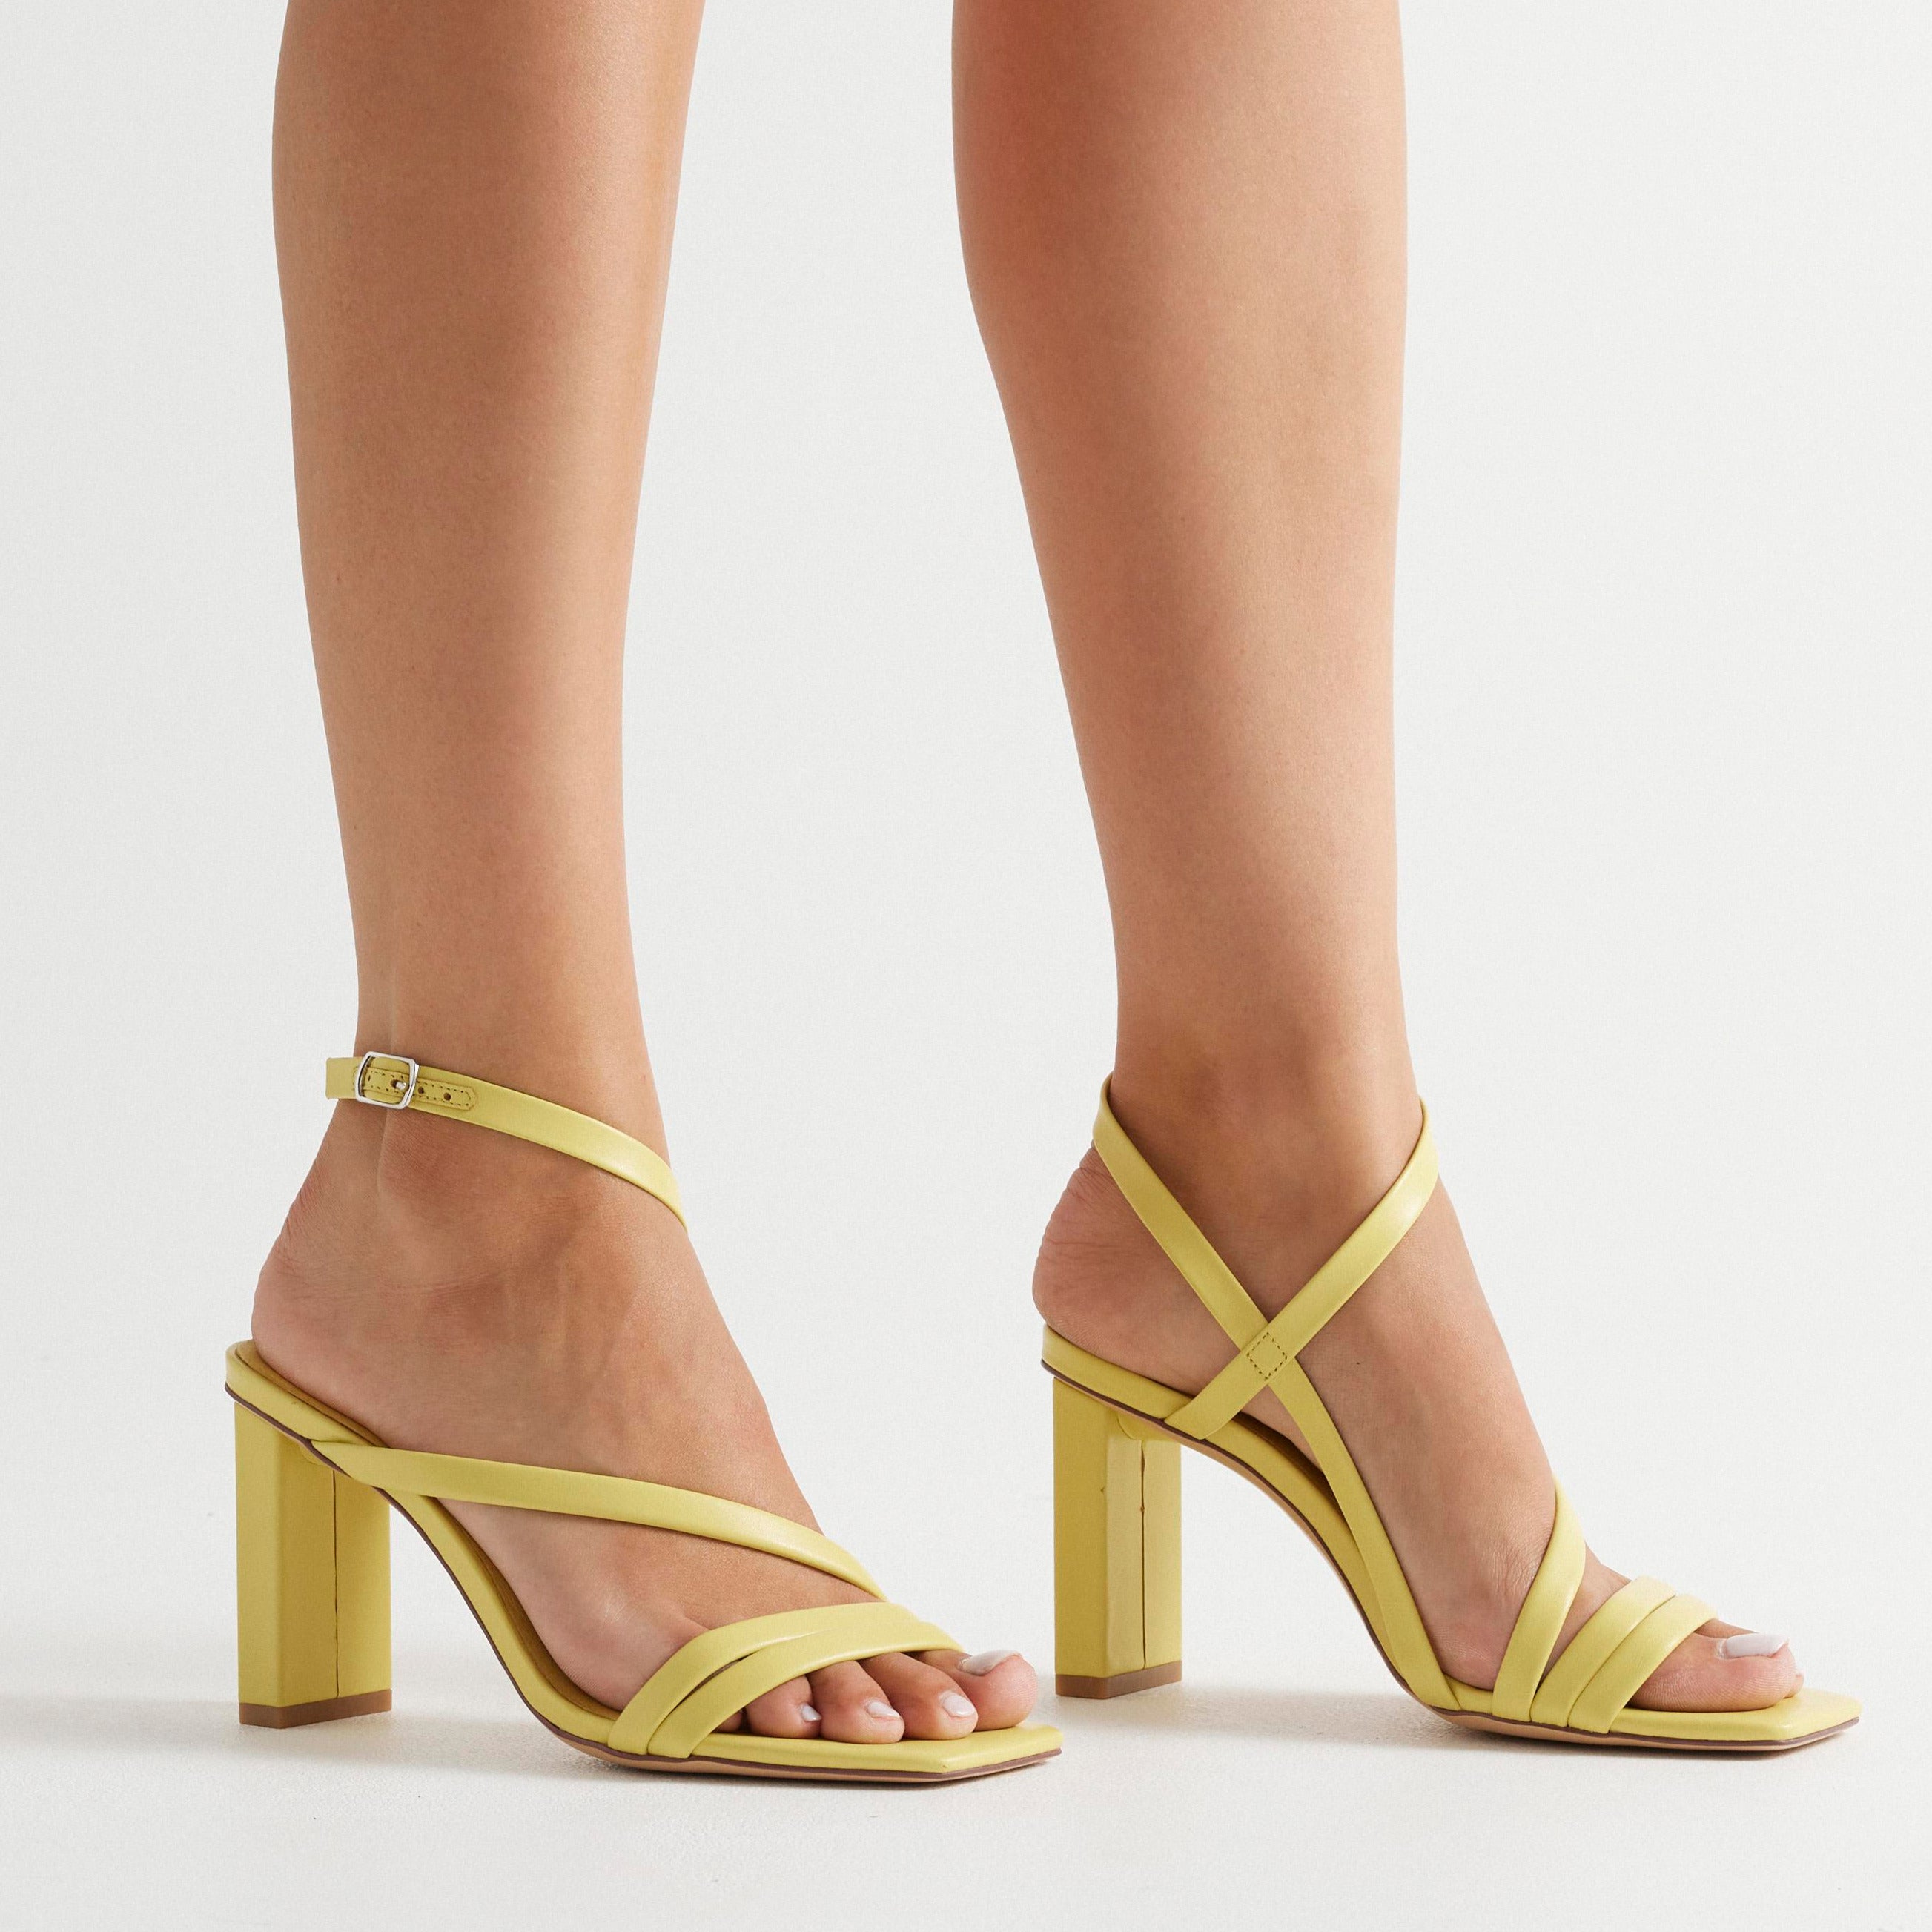 New Arrivals 2019 Lemon Yellow Heels Women Sandals Cut-out Cross Strap  Wedding Shoes Bride Hollow Peep Toe Summer Sandals - Women's Sandals -  AliExpress